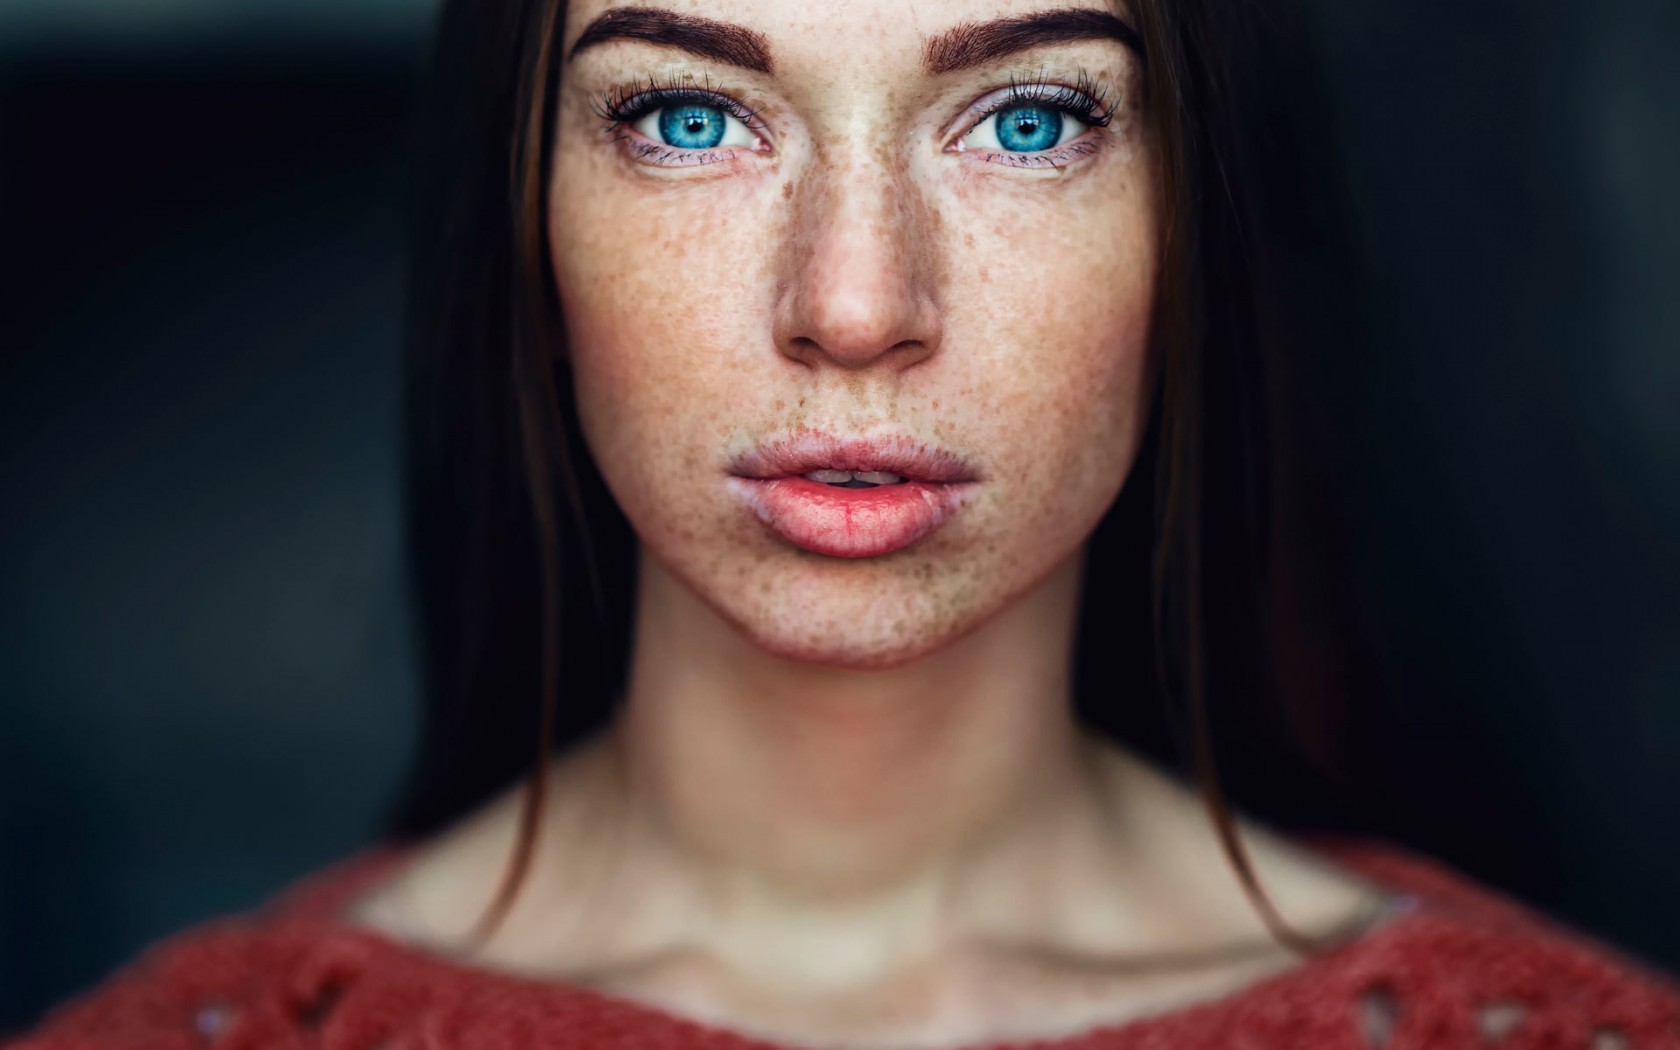 Freckled Brunette